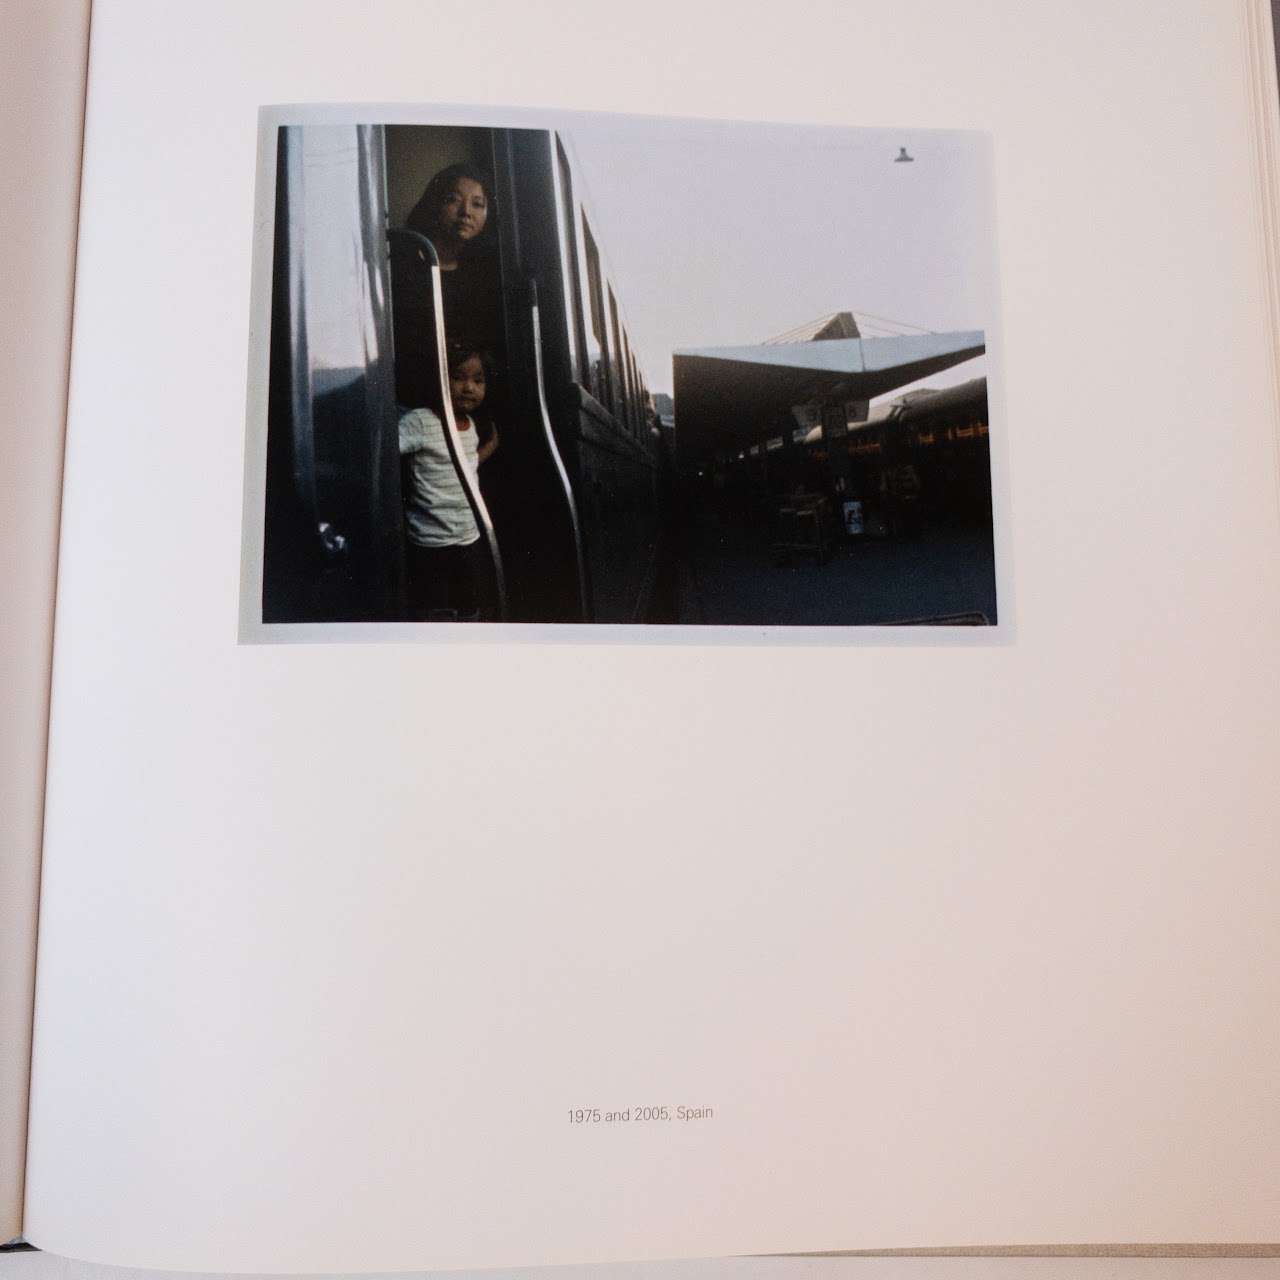 Chino Otsuka: 'PHOTO ALBUM' Book